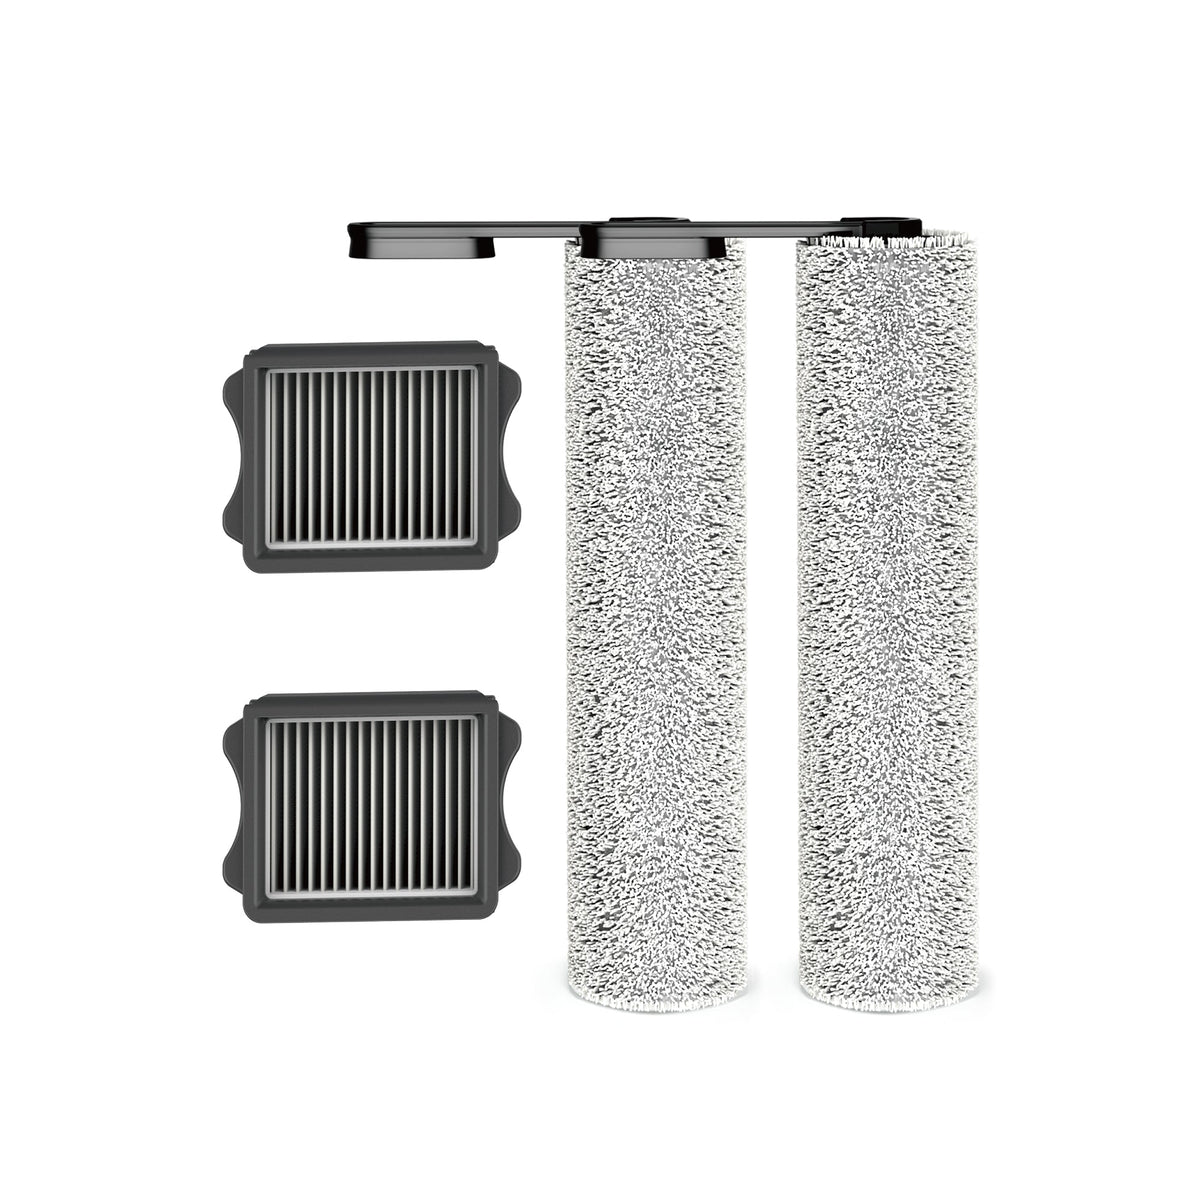 Kit d'accessoires Tineco FLOOR ONE S5/S5 PRO pour aspirateur sec/humid —  Tineco FR